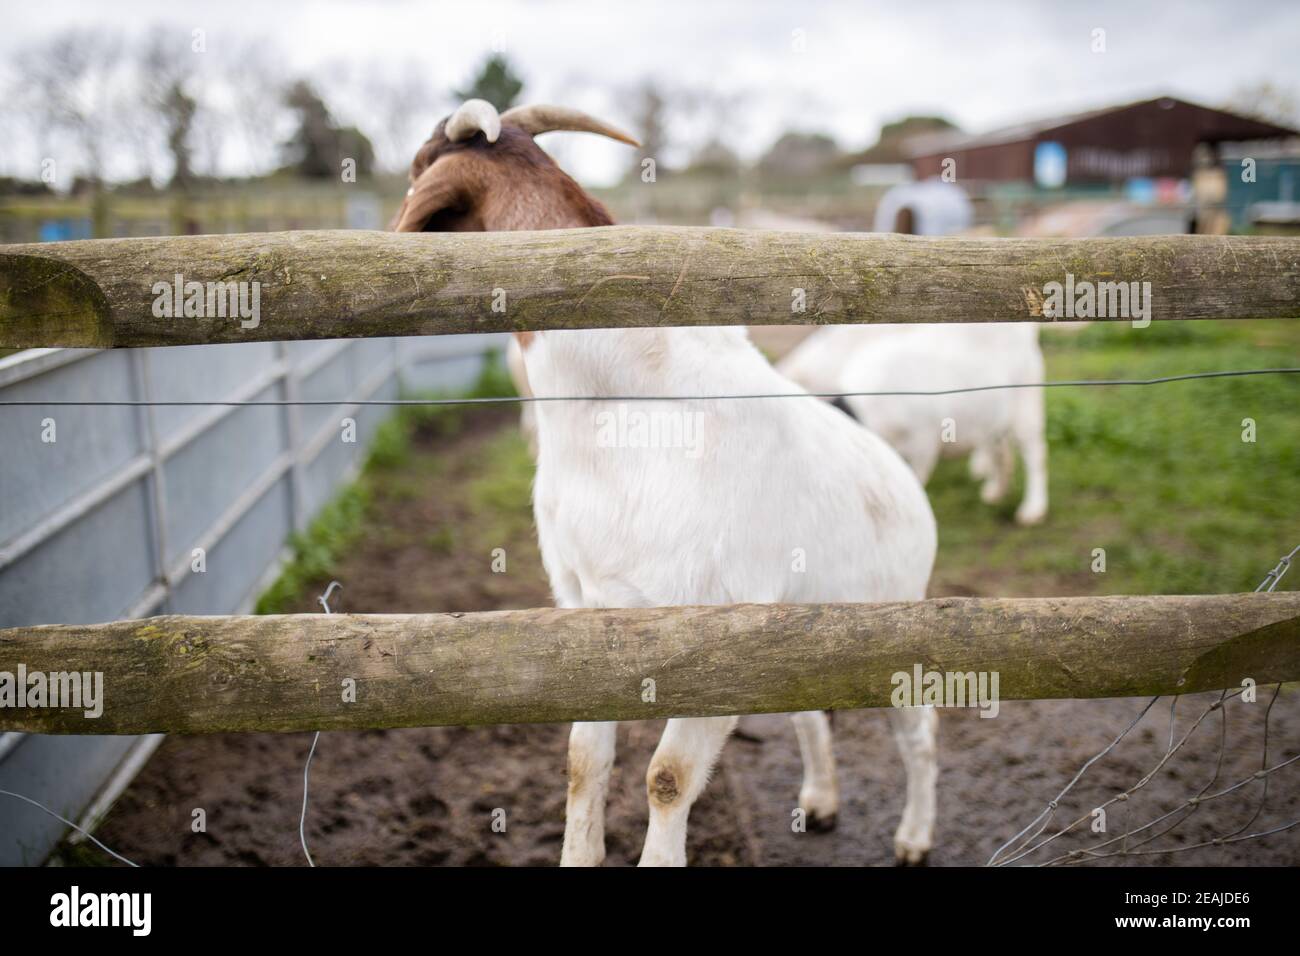 Des chèvres blanches et brunes piquant joyeusement derrière une clôture une ferme Banque D'Images